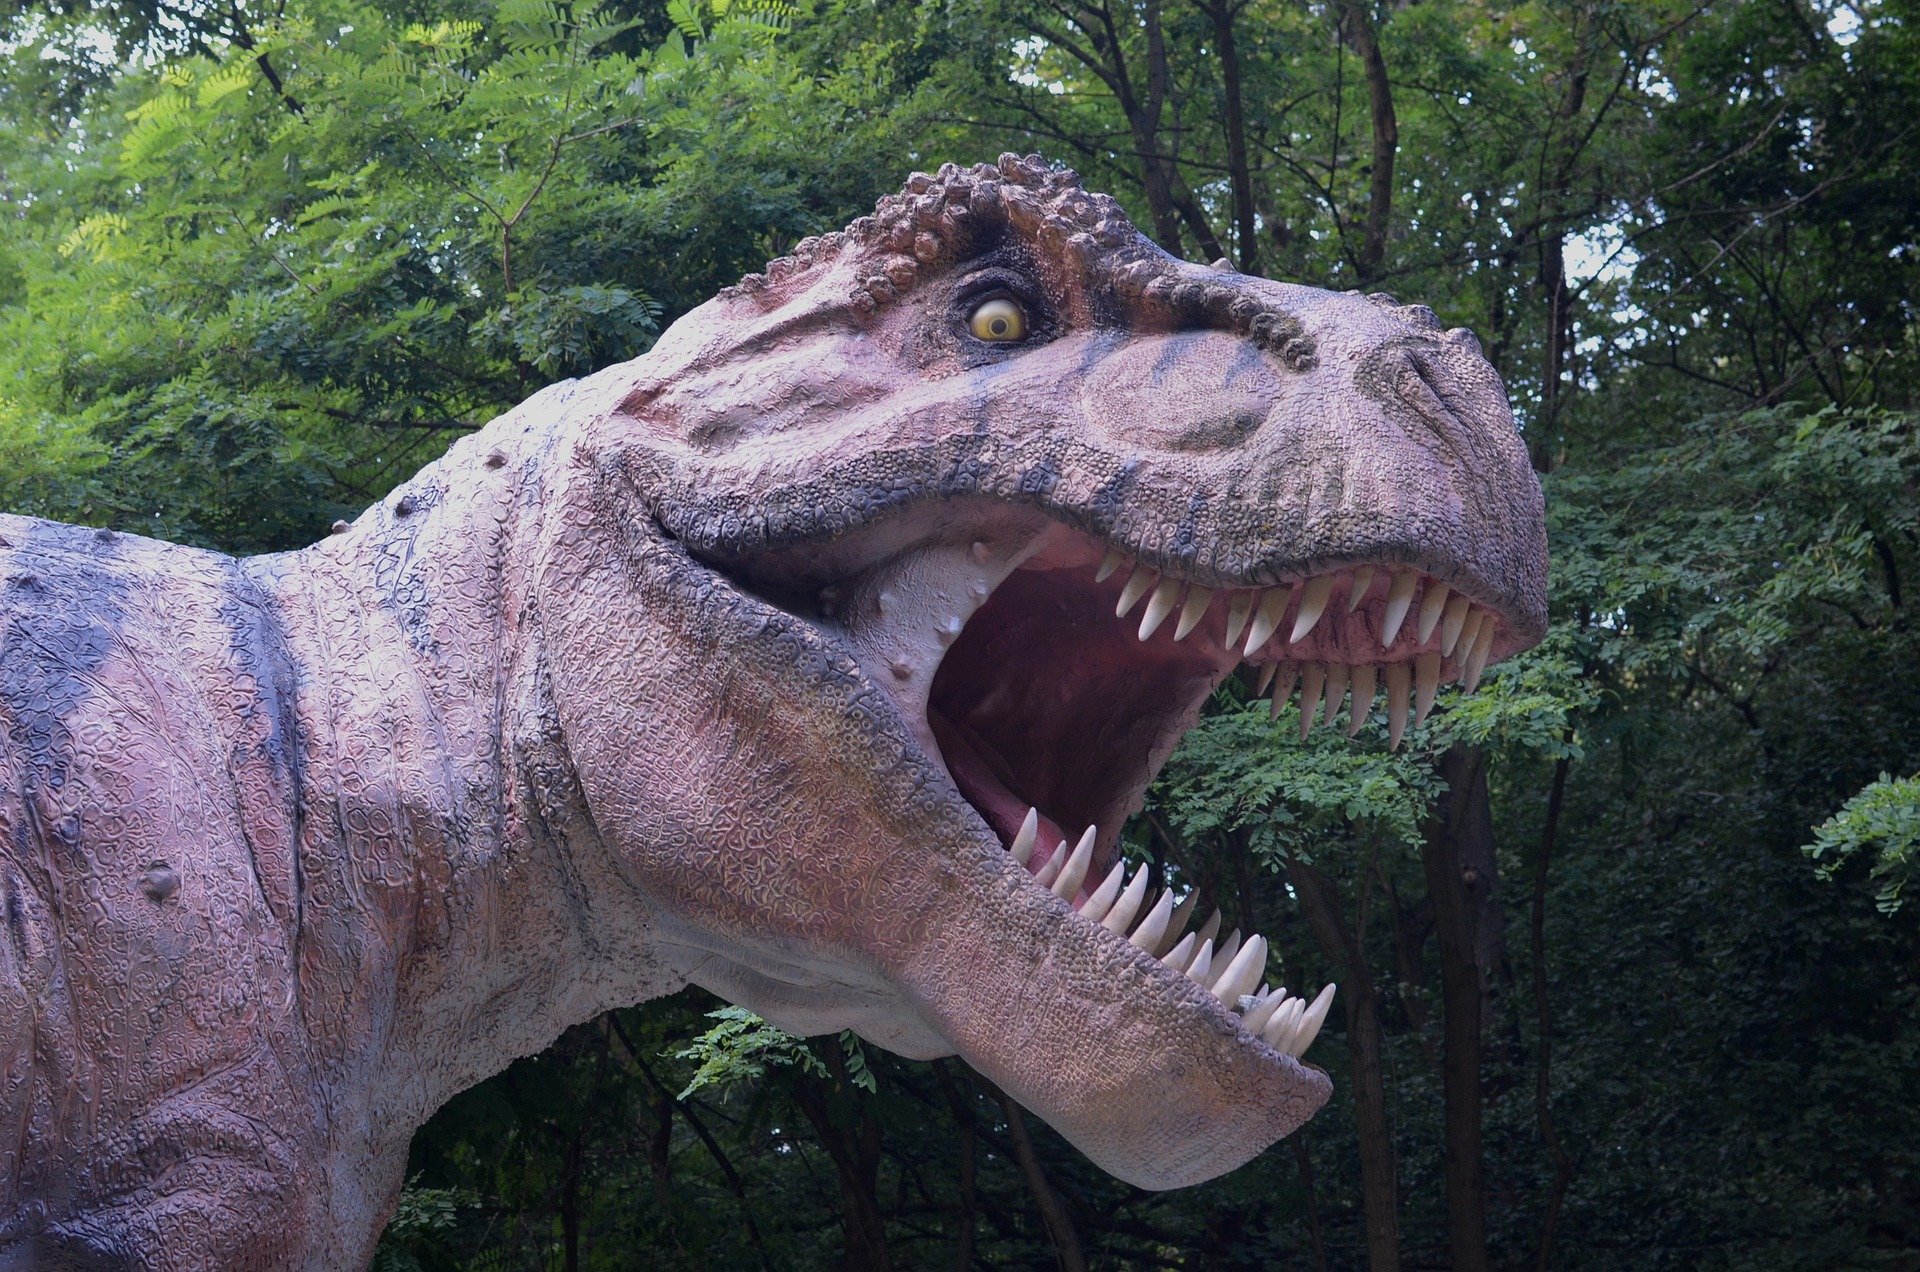 Už jste viděli robotického Tyronnasaura rexe? Pokud ne, zavítejte třeba na Dinoexpedici 2023 do Českých Budějovic!